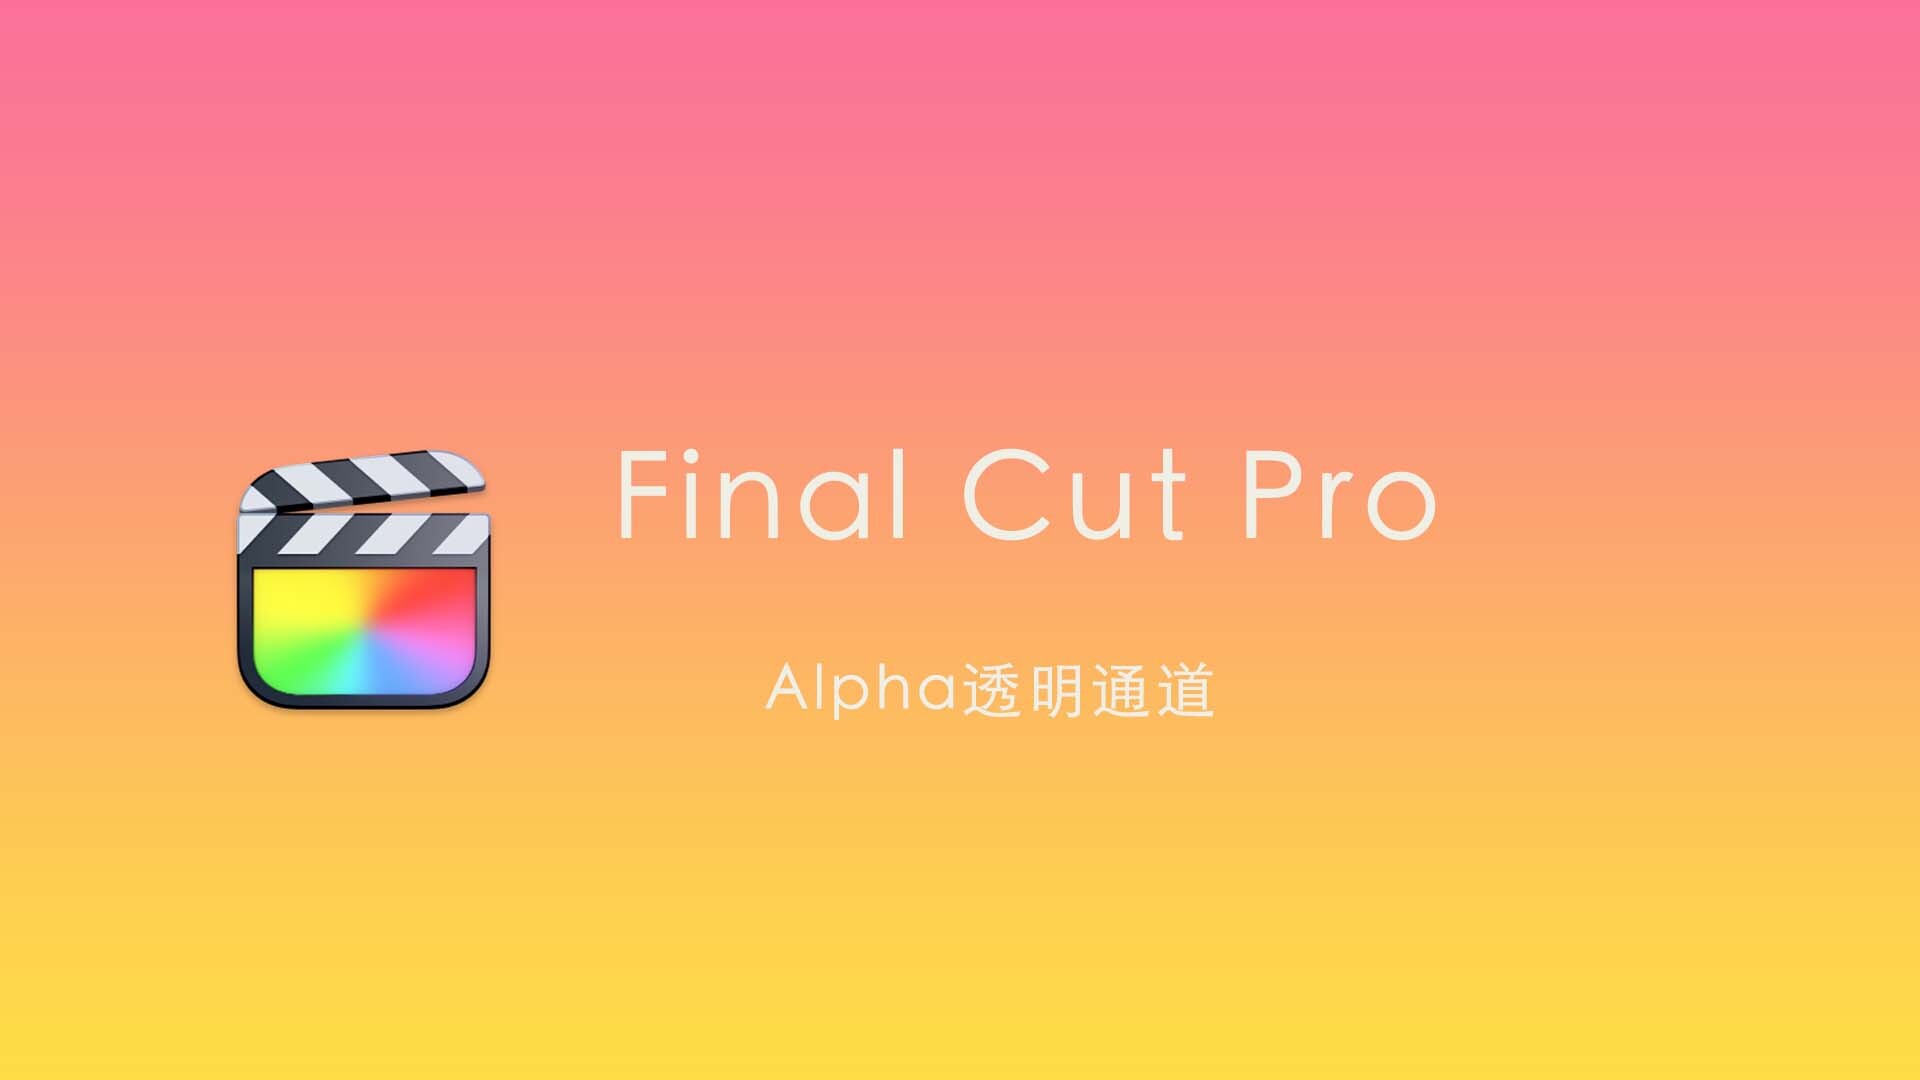 Final Cut Pro中文新手教程 (52) 如何导出Alpha通道透明视频？绿幕抠图